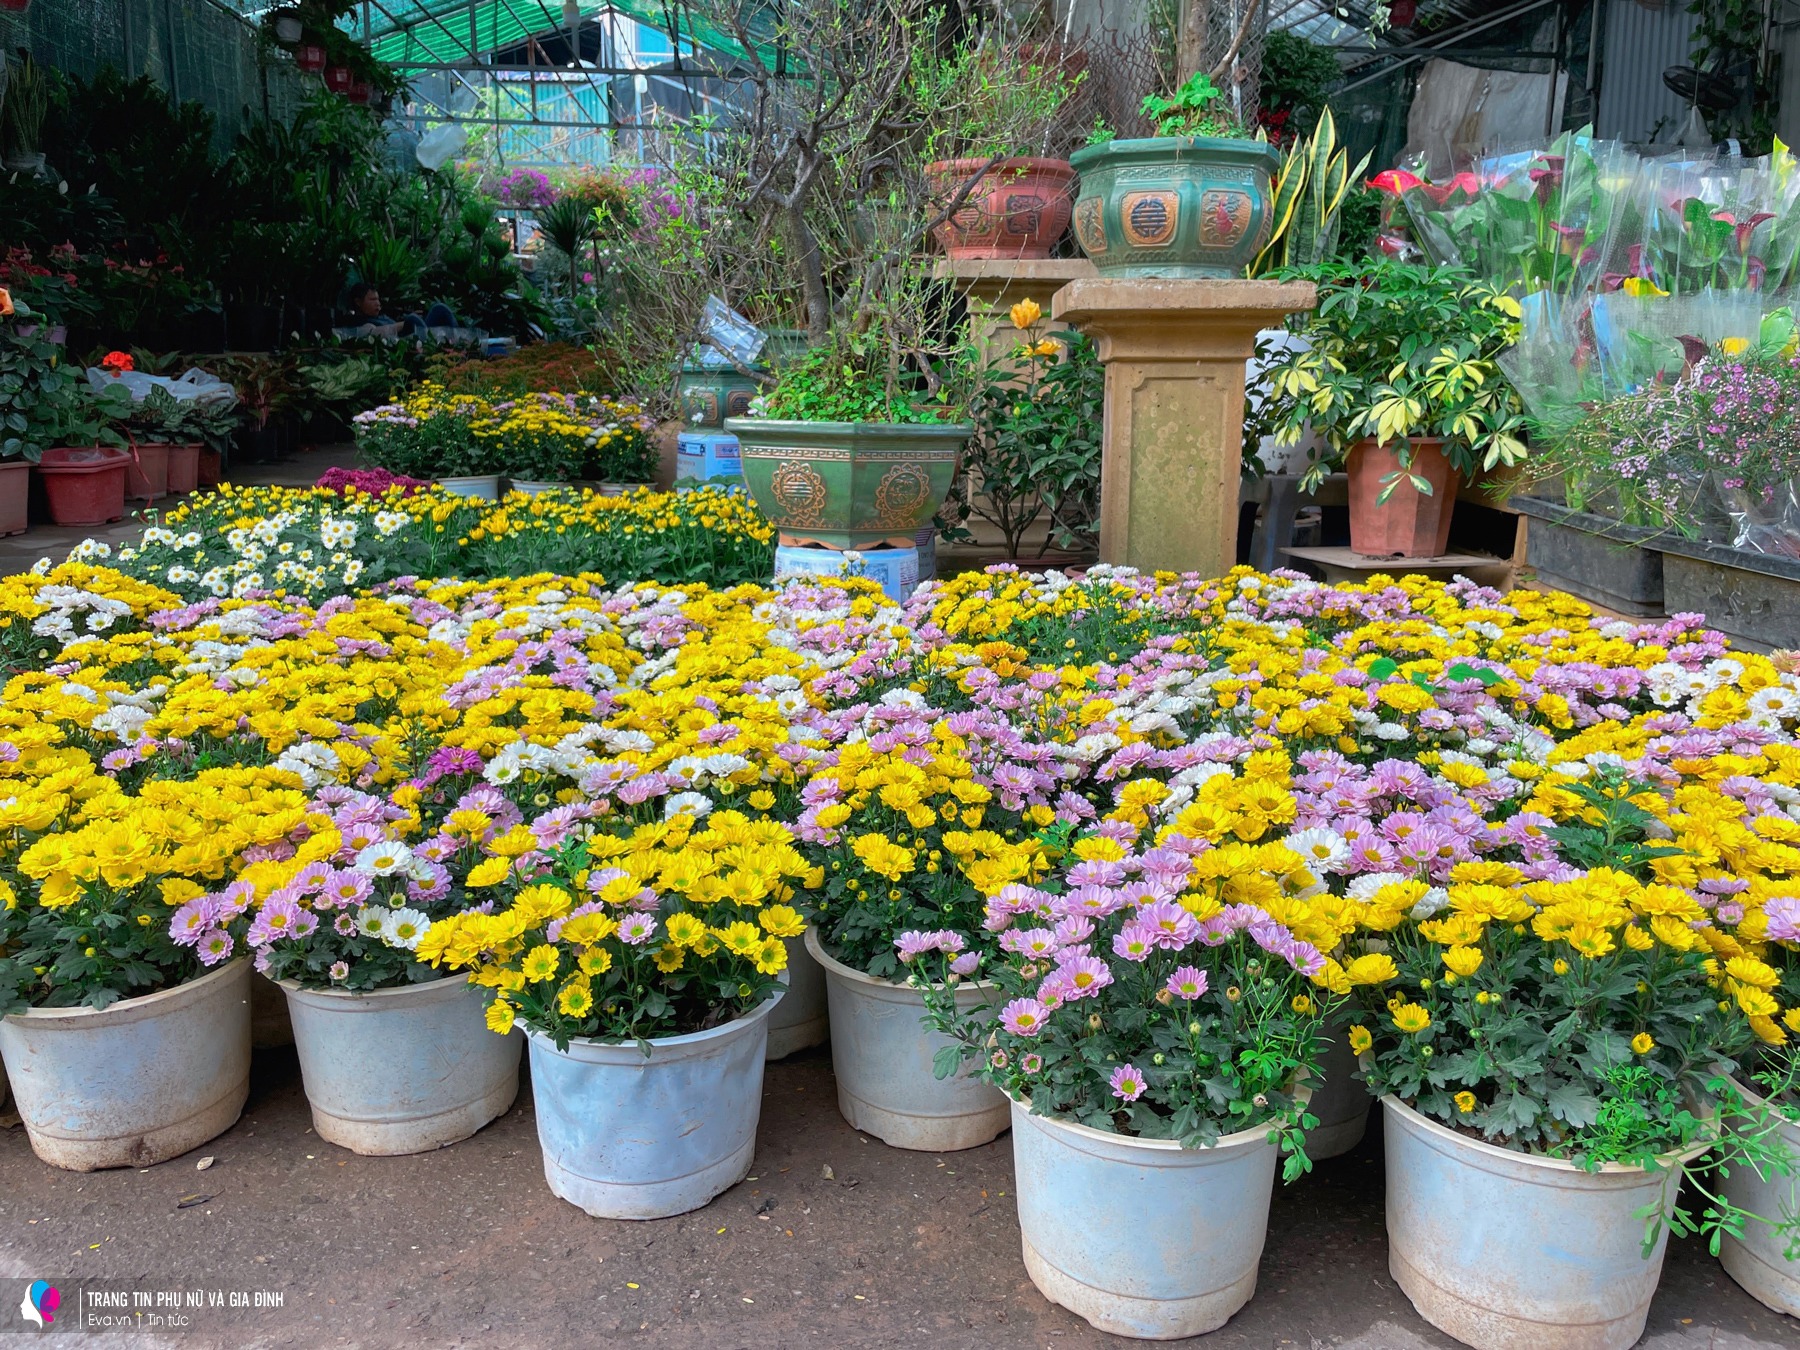 Chợ Vạn Phúc năm nay đa dạng các loại hoa hơn, đặc biệt là những dòng hoa giá bình dân như hoa cúc, hoa đồng tiền, hoa trà...